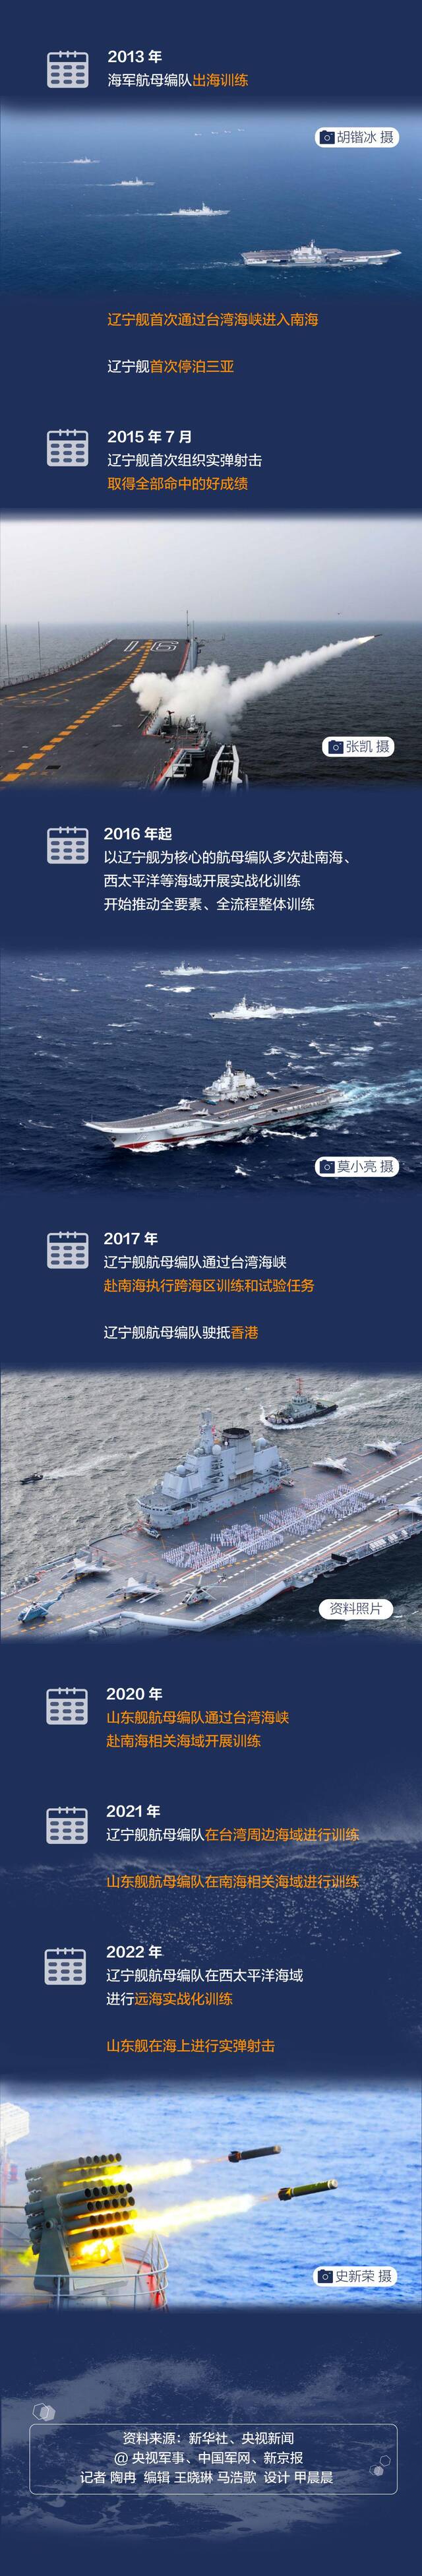 中国航母入列10周年 一图看懂海上“三舰客”